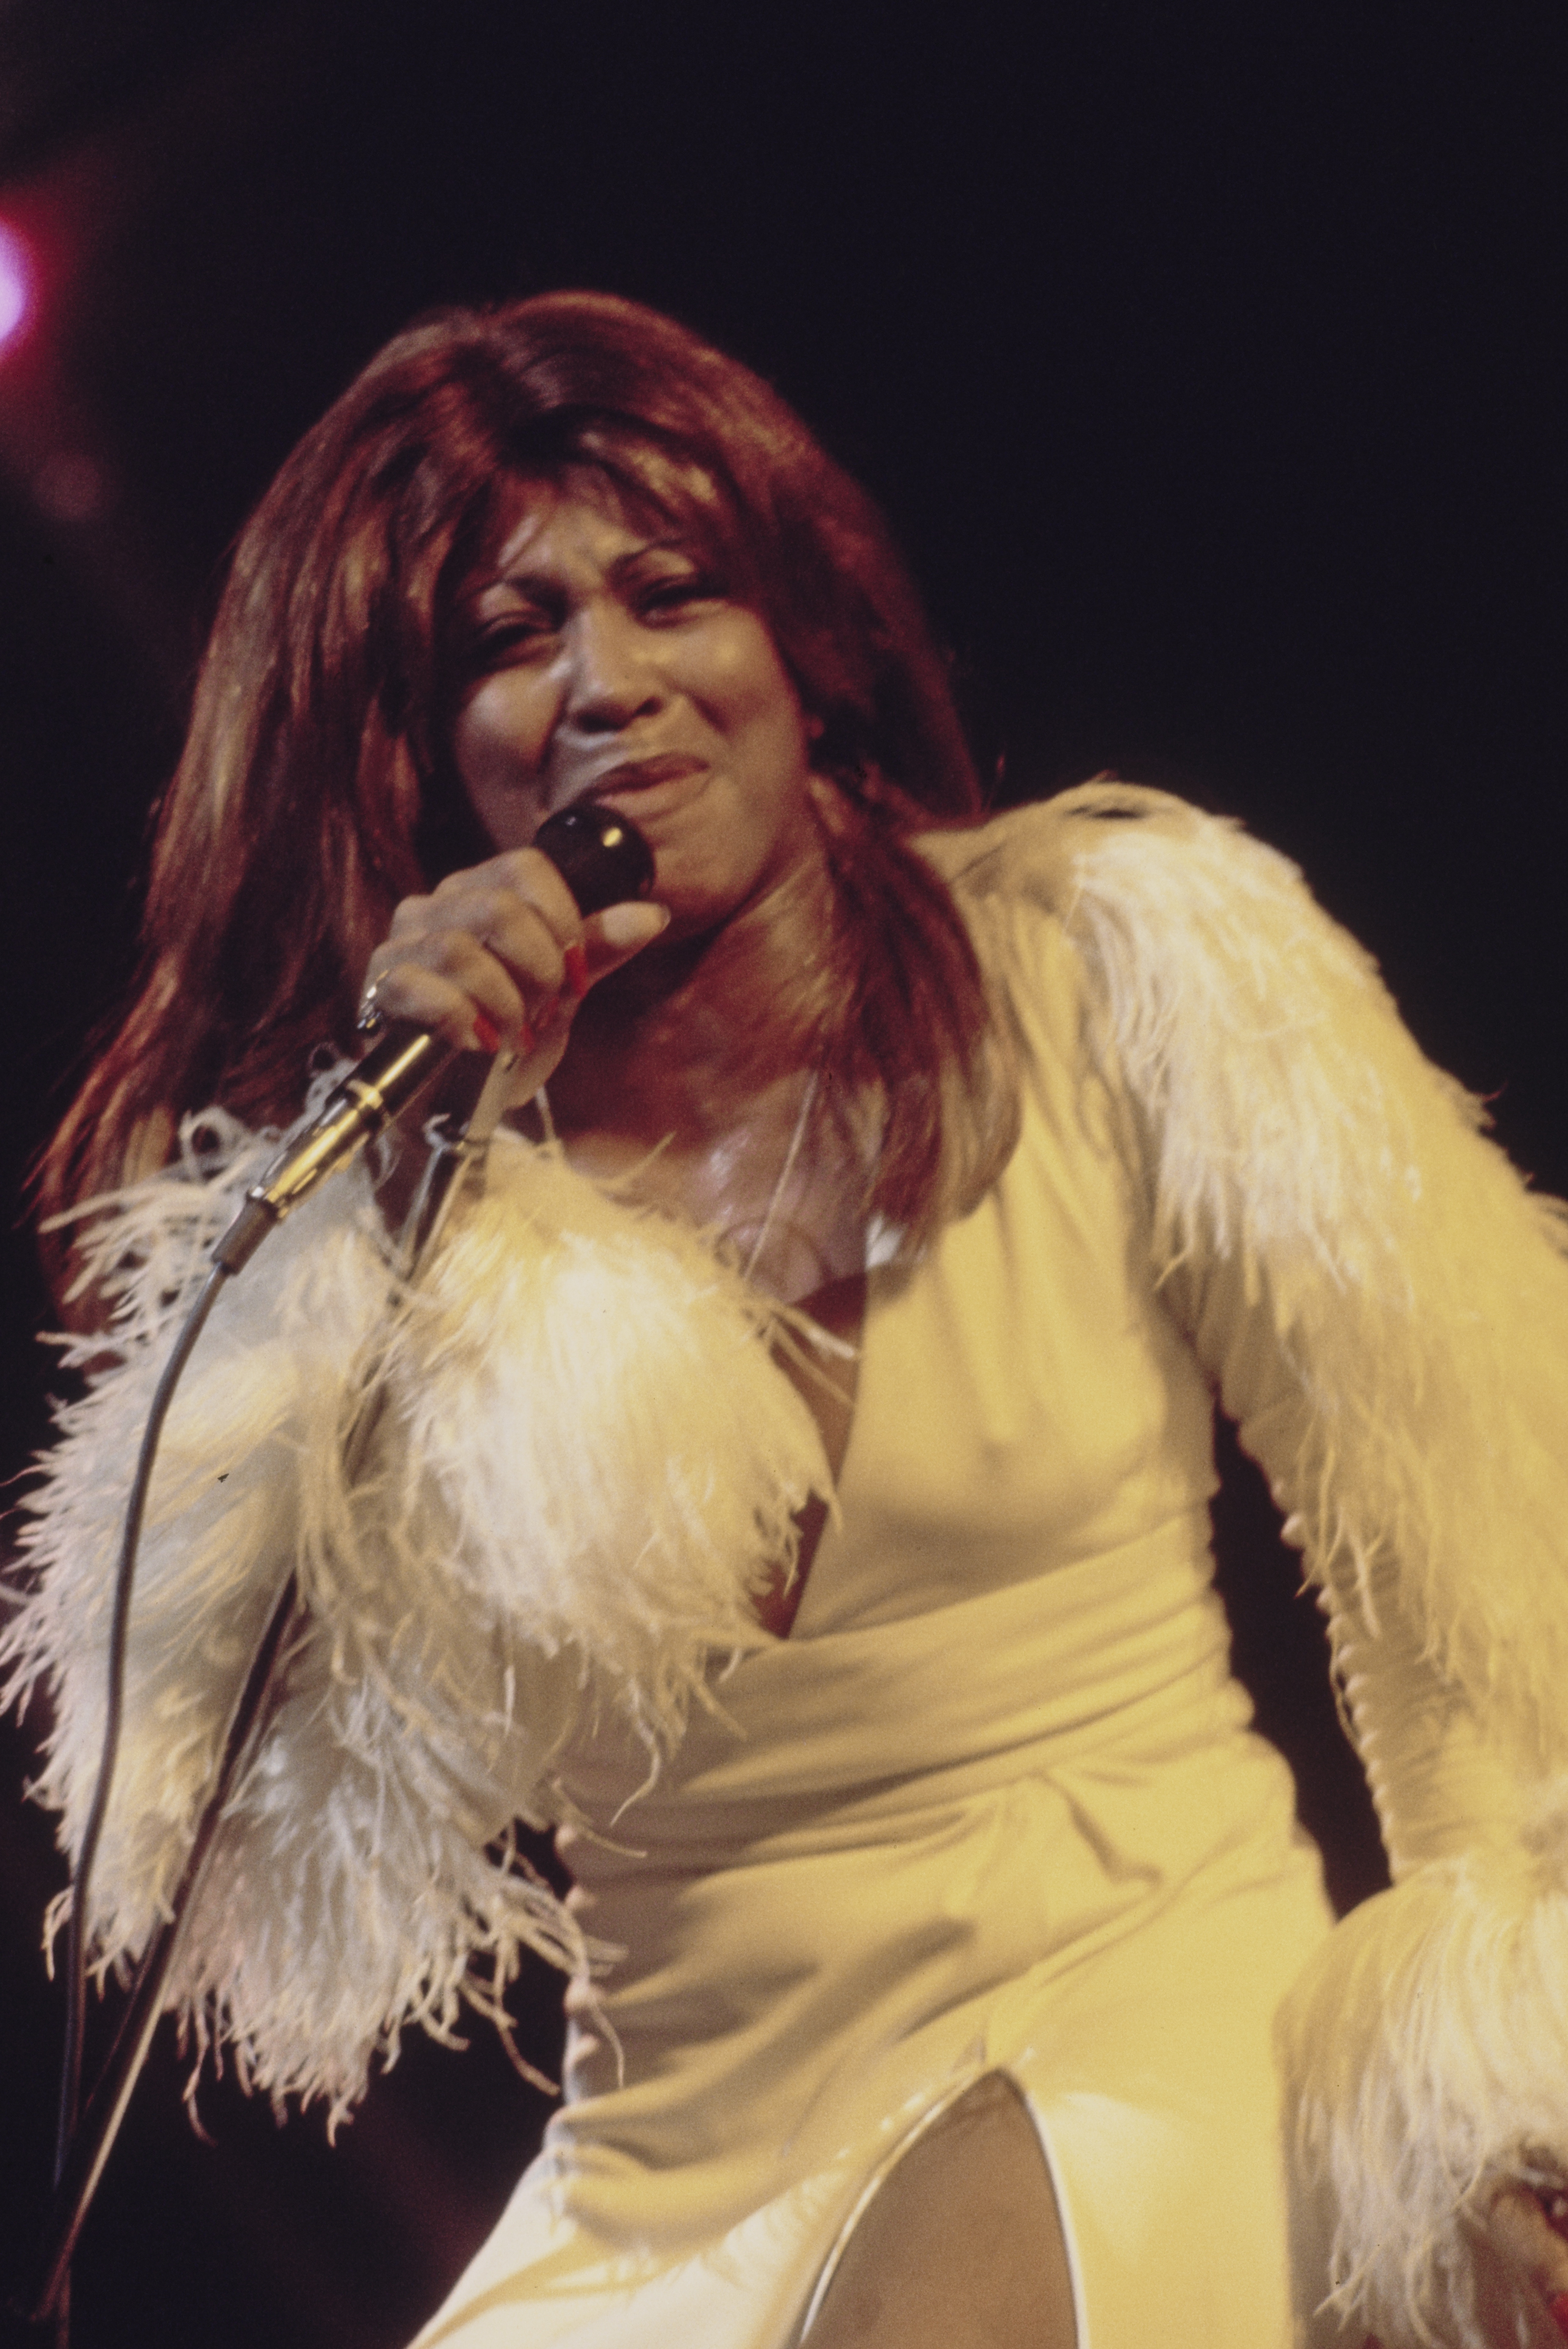 La chanteuse se produisant sur scène dans les années 1970. | Source : Getty Images